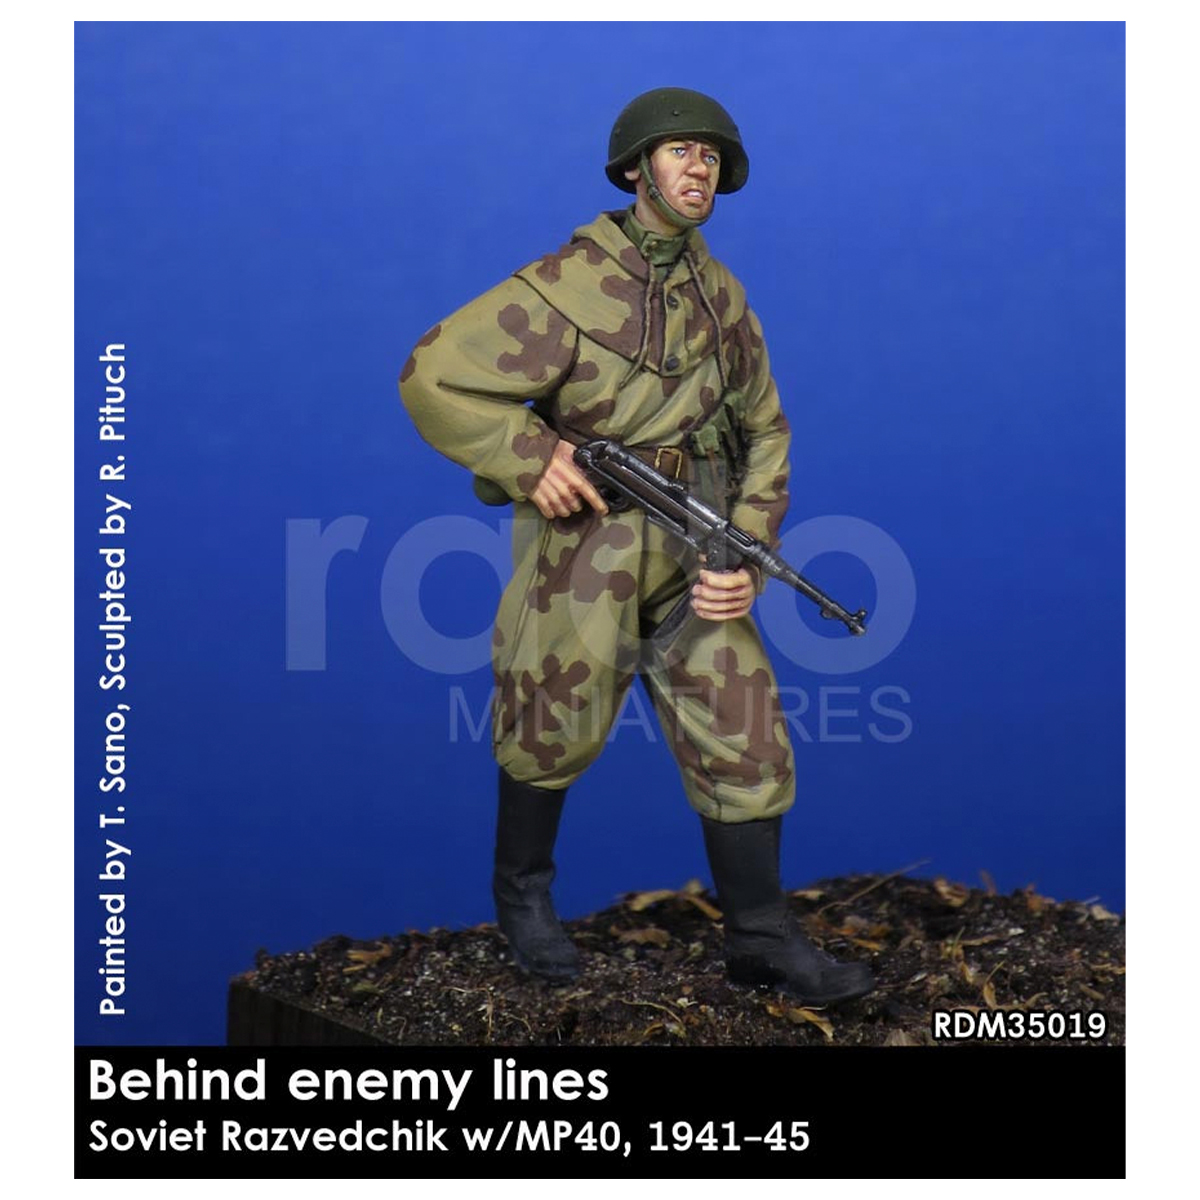 Behind enemy lines #1 1/35